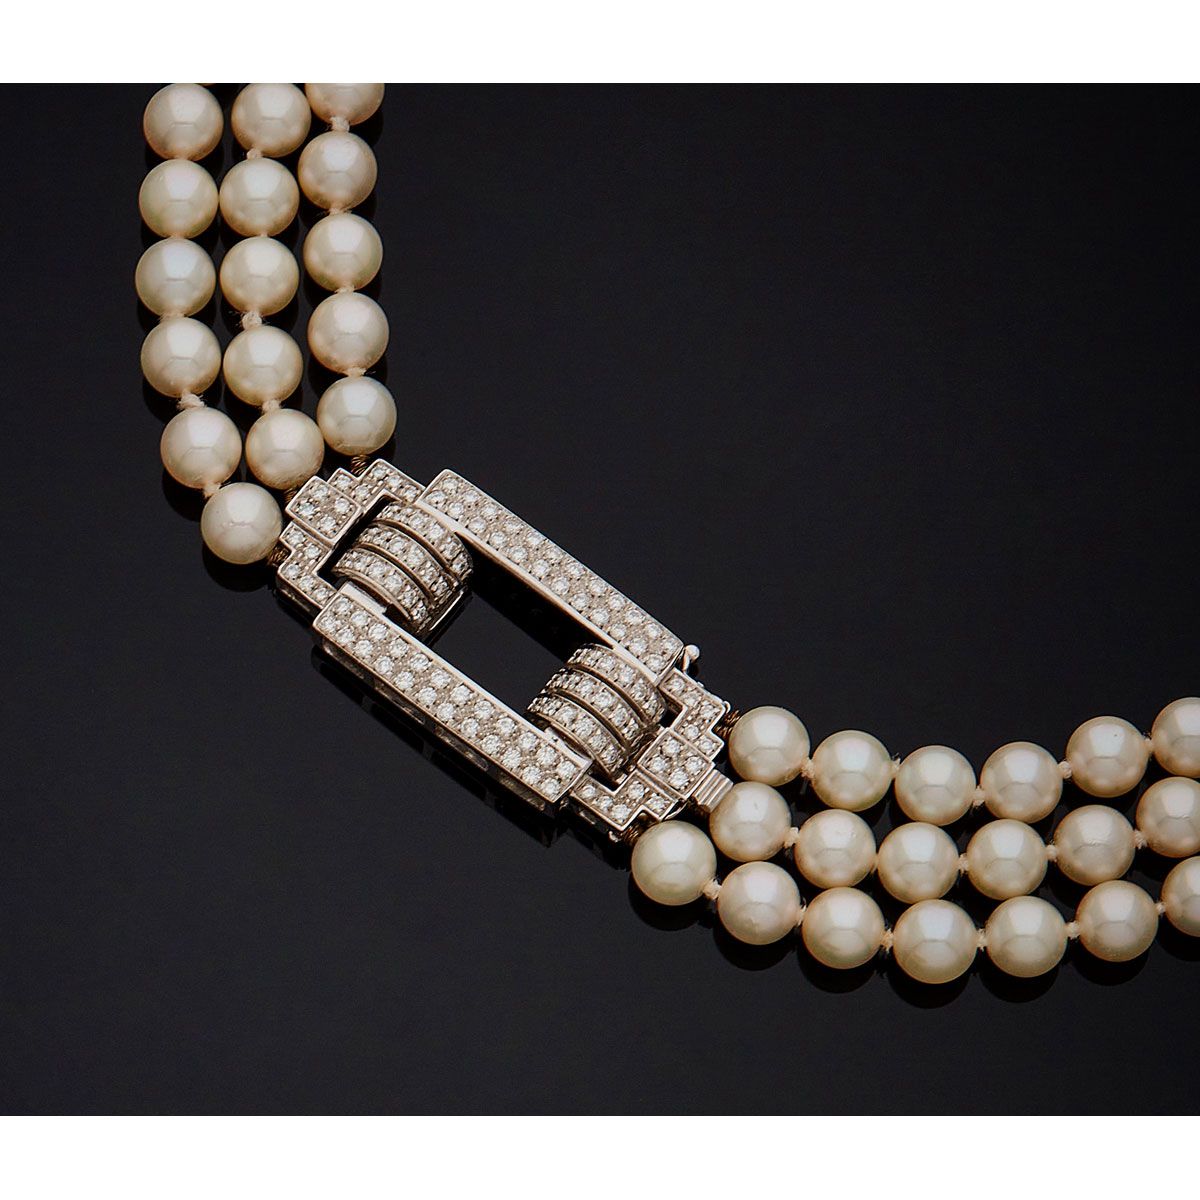 Null 项链由三排养殖珍珠组成，安装在钢丝上，装饰有18K白金750毫米的几何图案扣，镶嵌有现代切割钻石，棘轮系统具有安全性。

B.P. 122.2g。- &hellip;